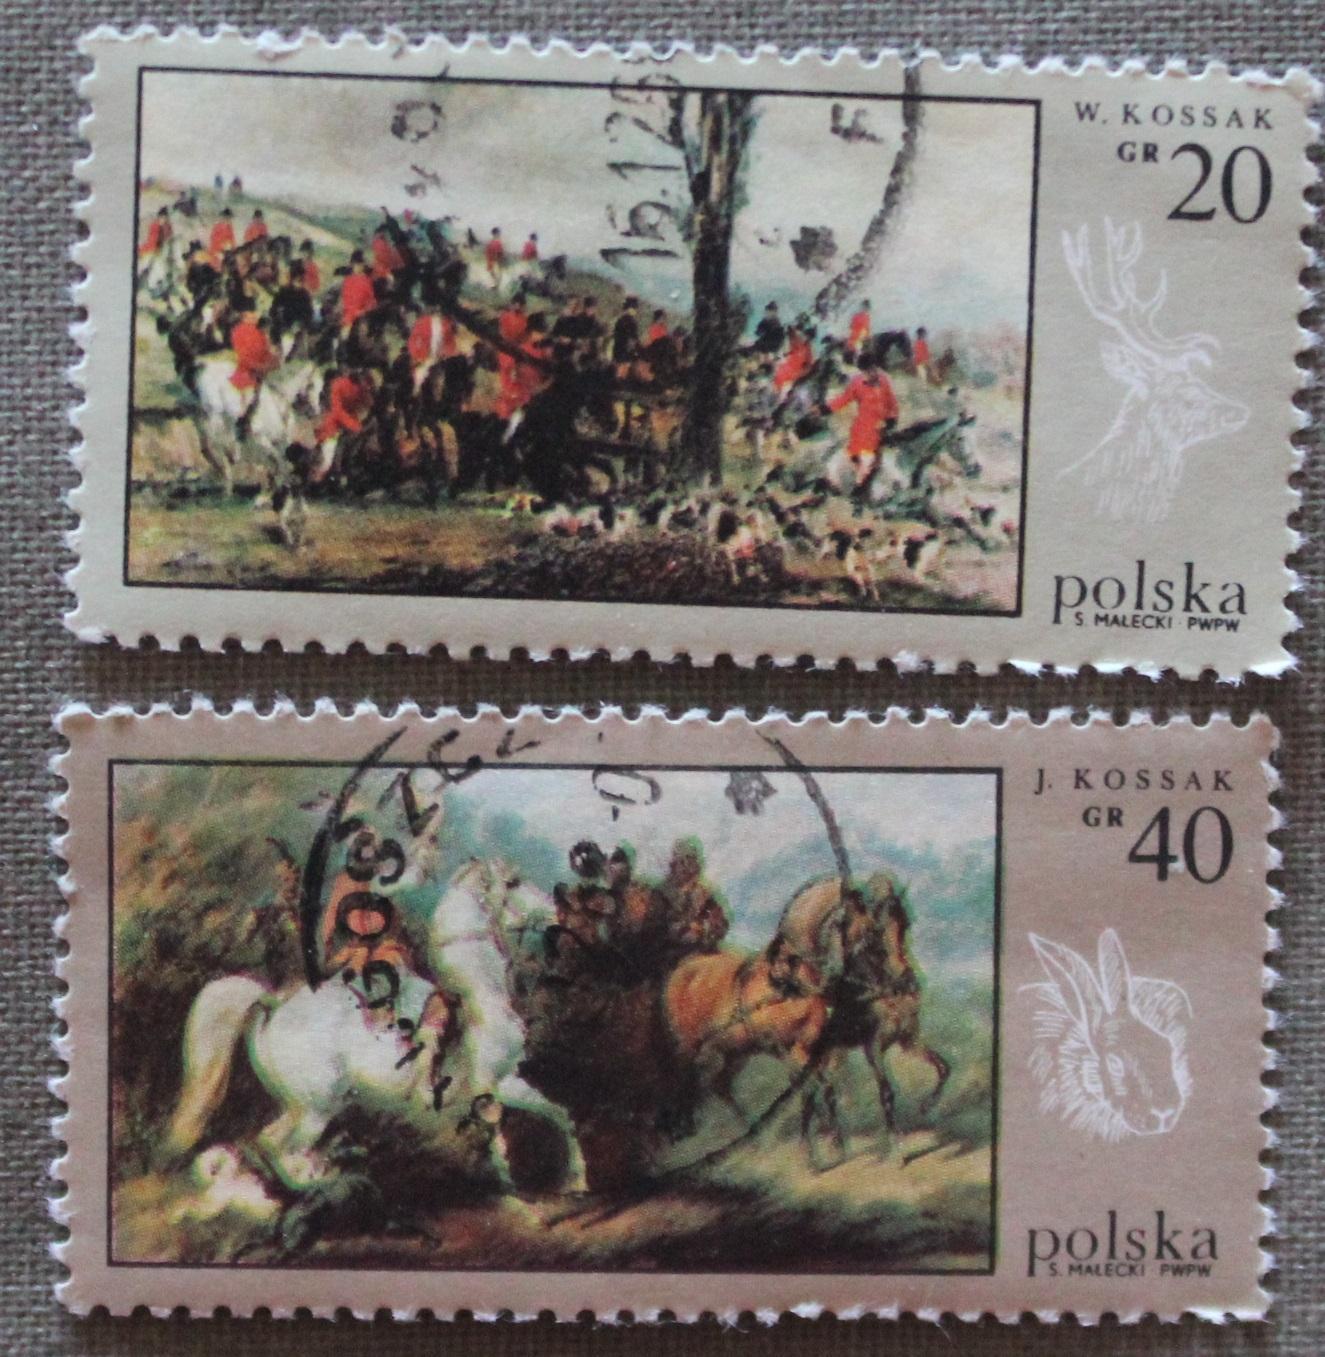 Две марки из набора Охота в живописи. Почта Польши 1968